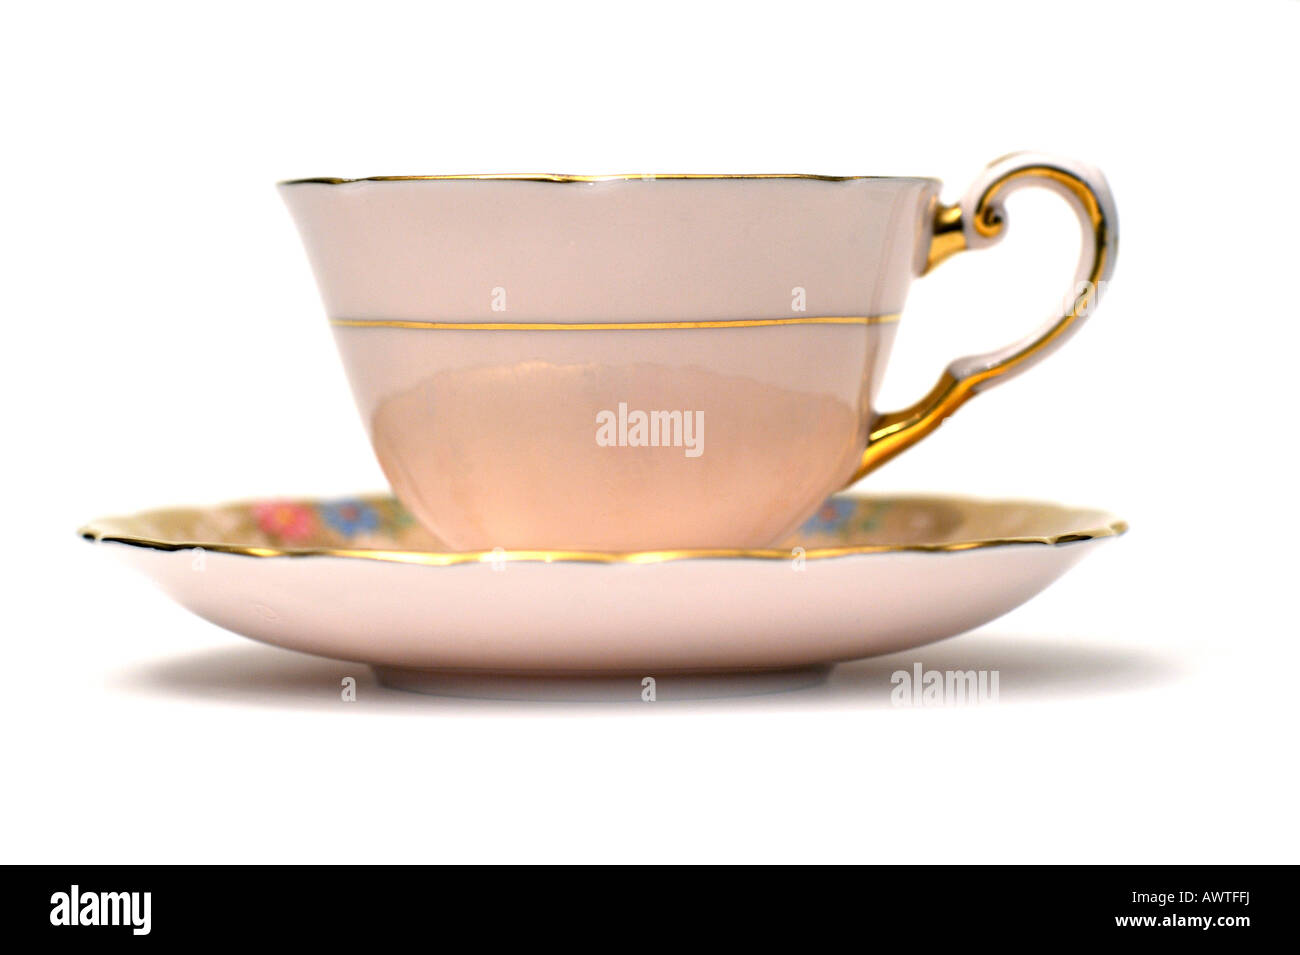 Anglais fine porcelaine porcelaine céramique anglaise café thé tasse soucoupe par utilisation éditoriale Toscane seulement Banque D'Images